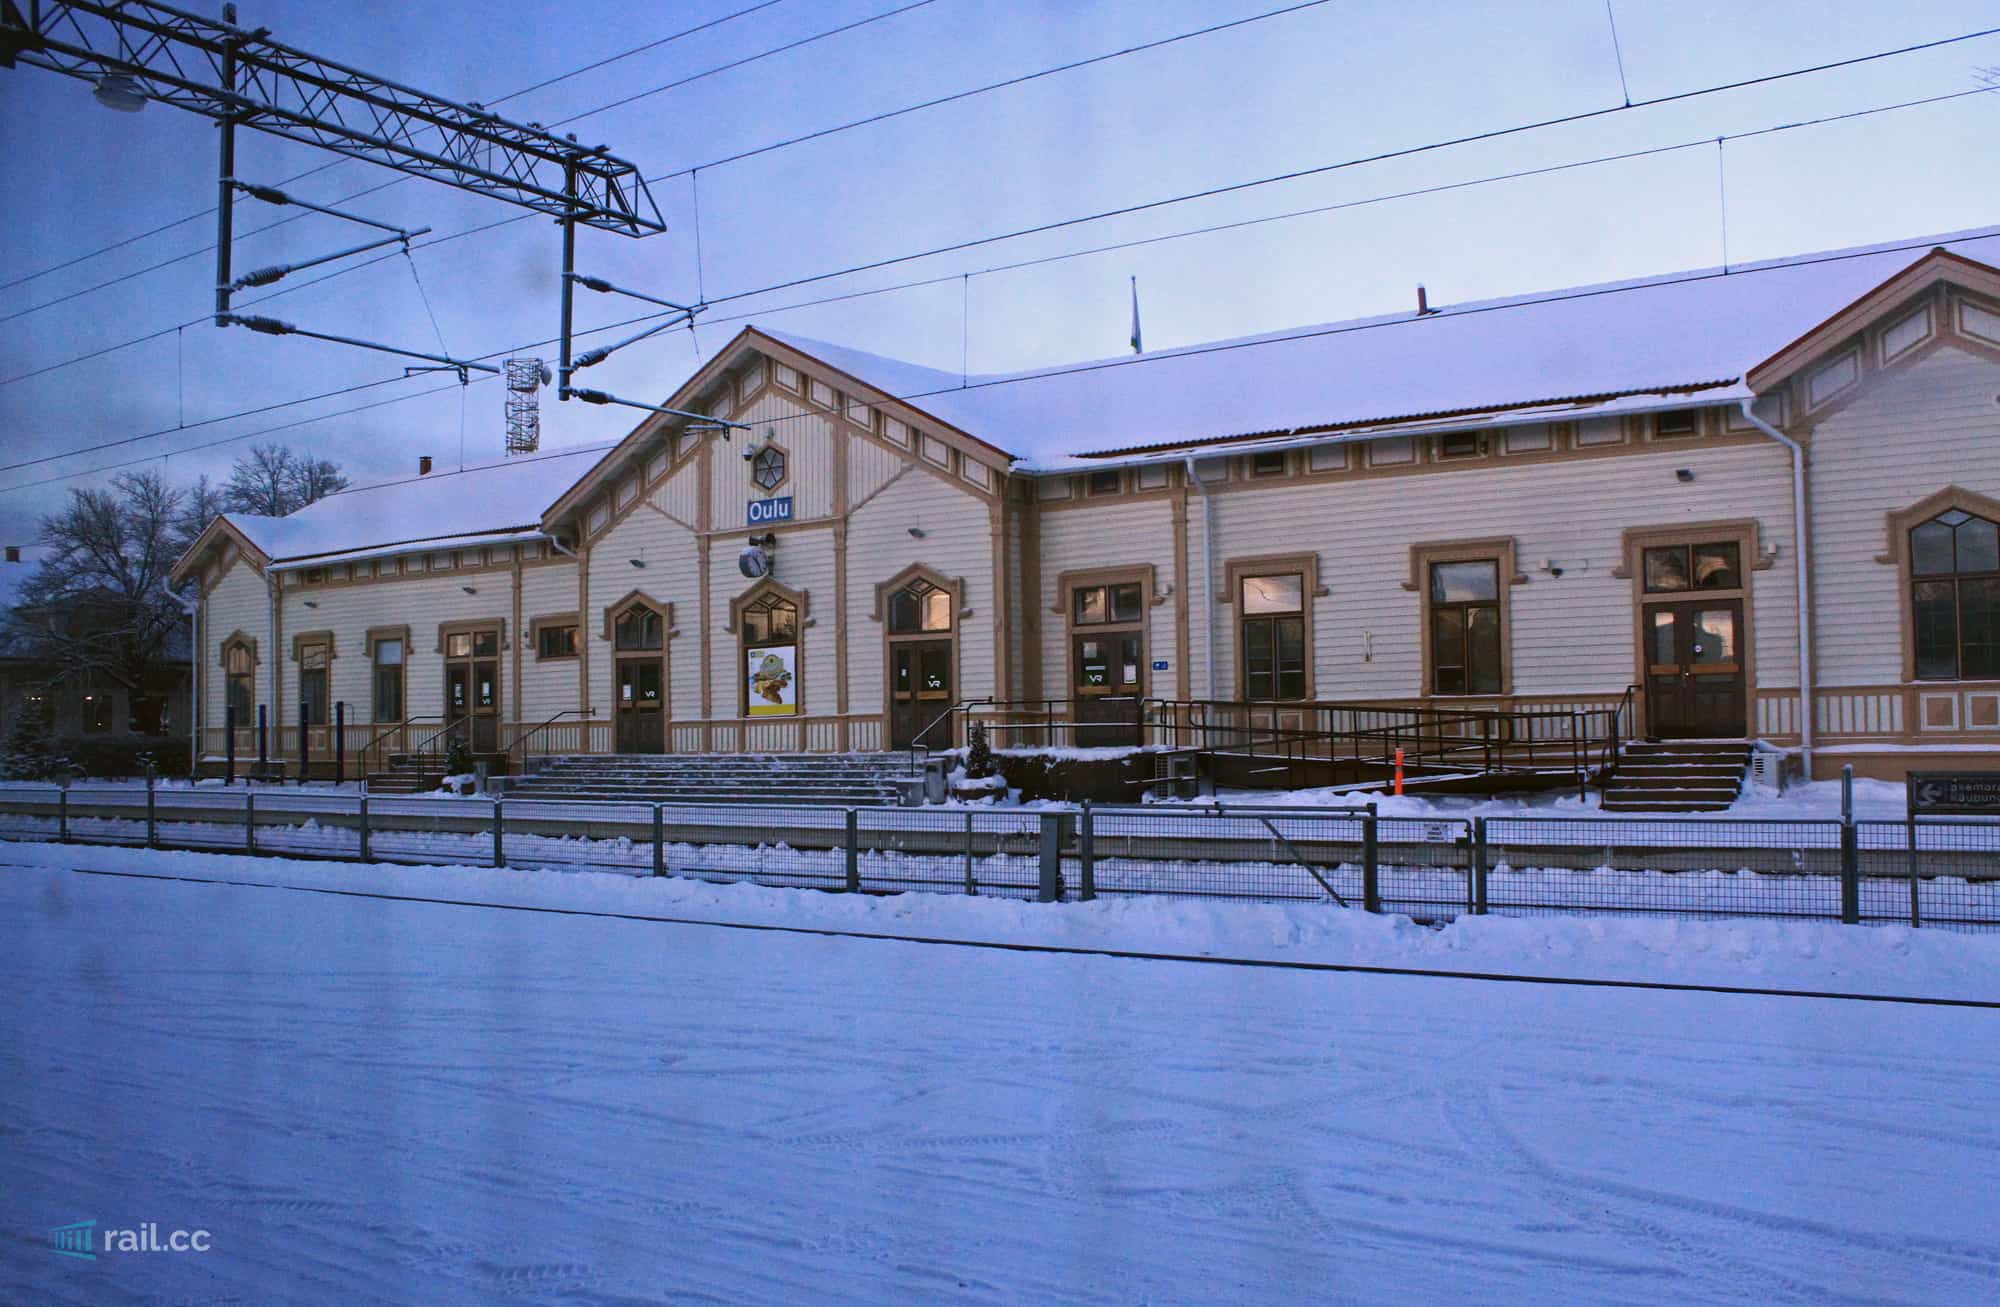 Bahnhof Oulu